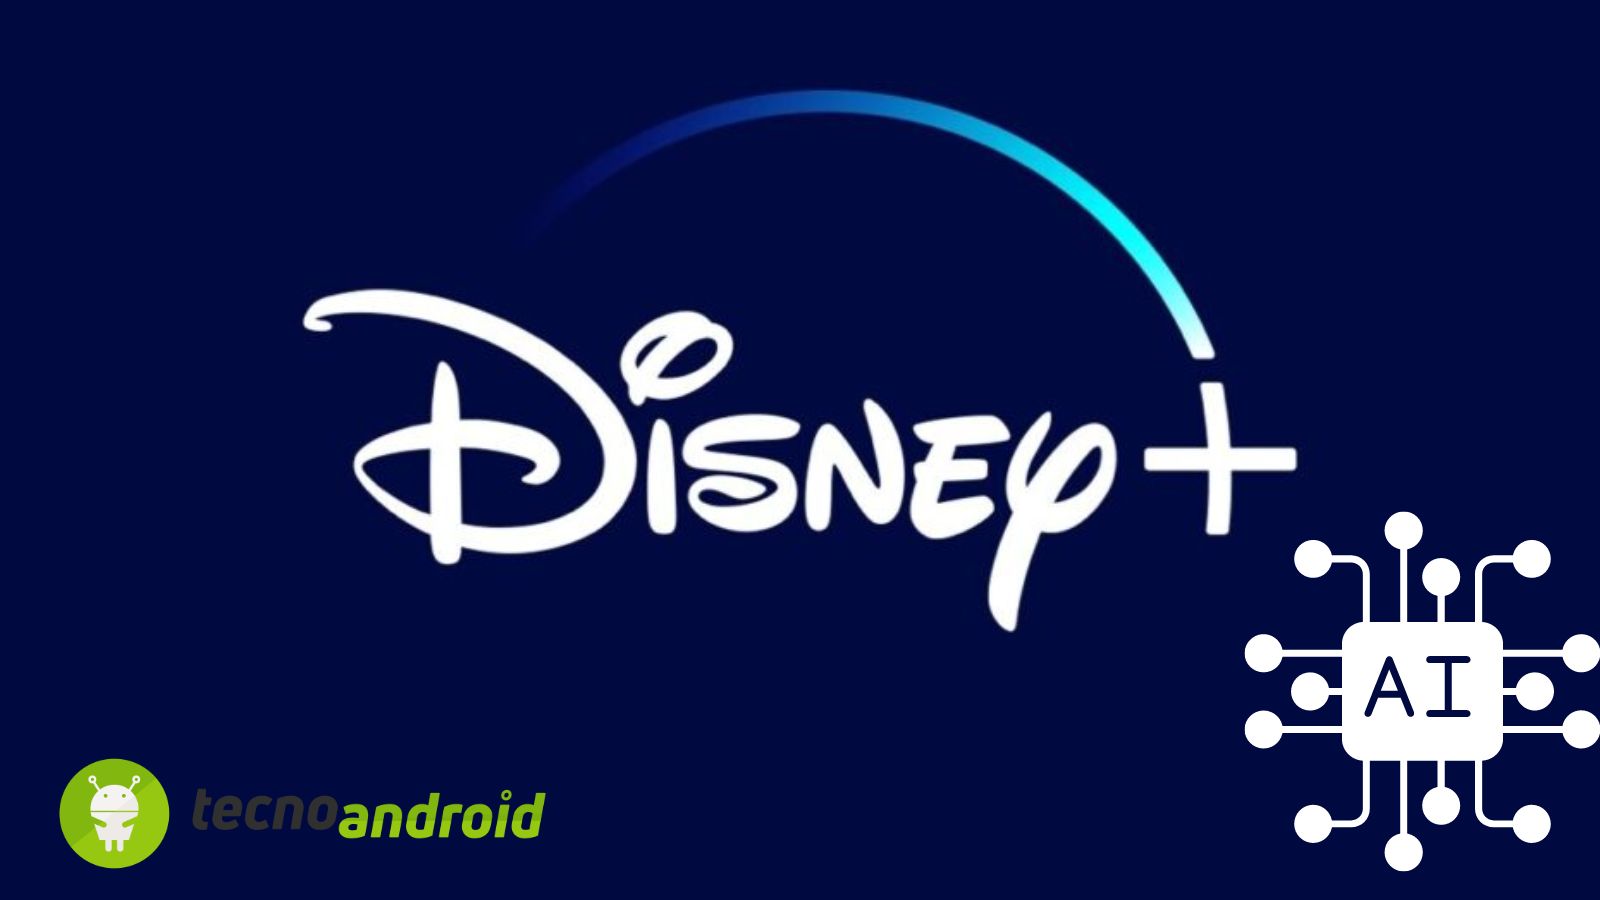 Disney+ e intelligenza artificiale uniti per il targeting pubblicitario